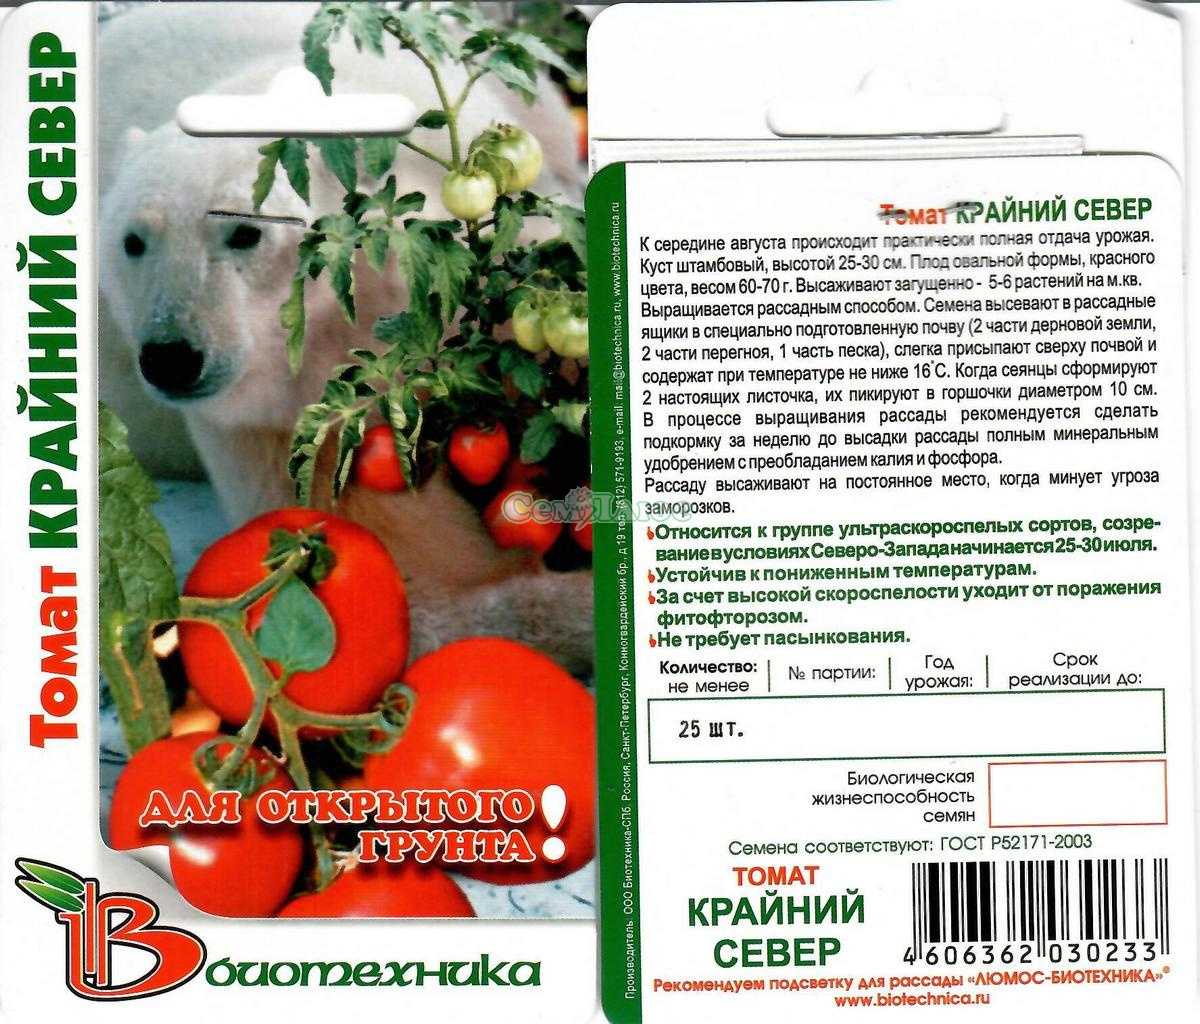 Сорт томатов крайний север: описание, характеристика, фото и отзывы тех, кто сажал, а также особенности выращивания